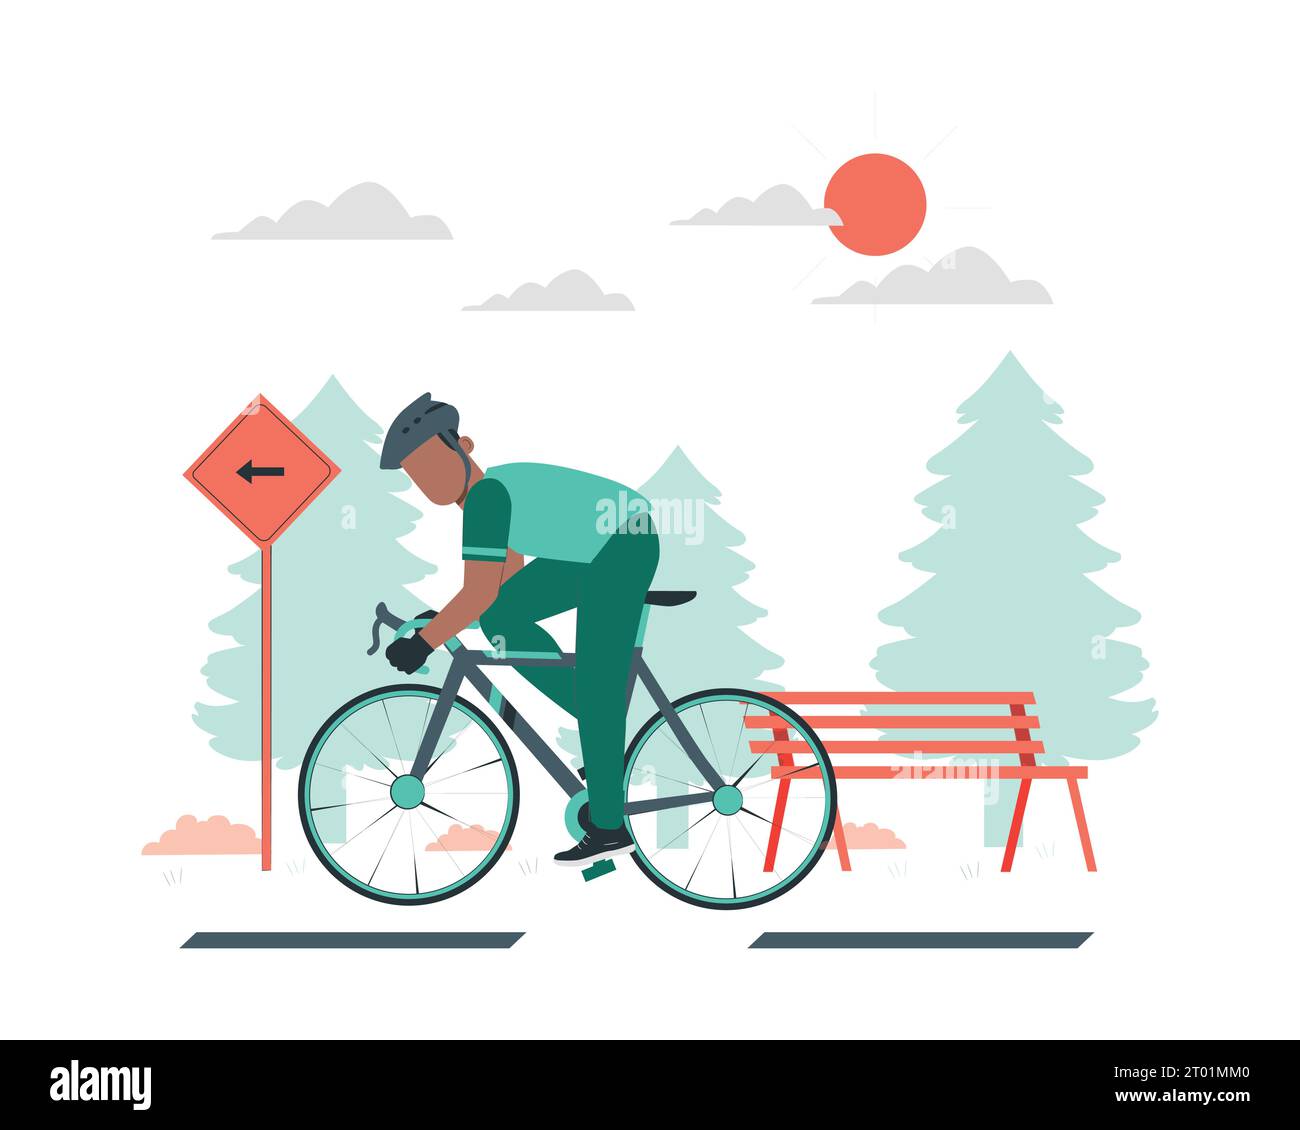 Mann, der im Park Fahrrad fährt. Flache Vektorillustration für nachhaltiges Leben. Stock Vektor